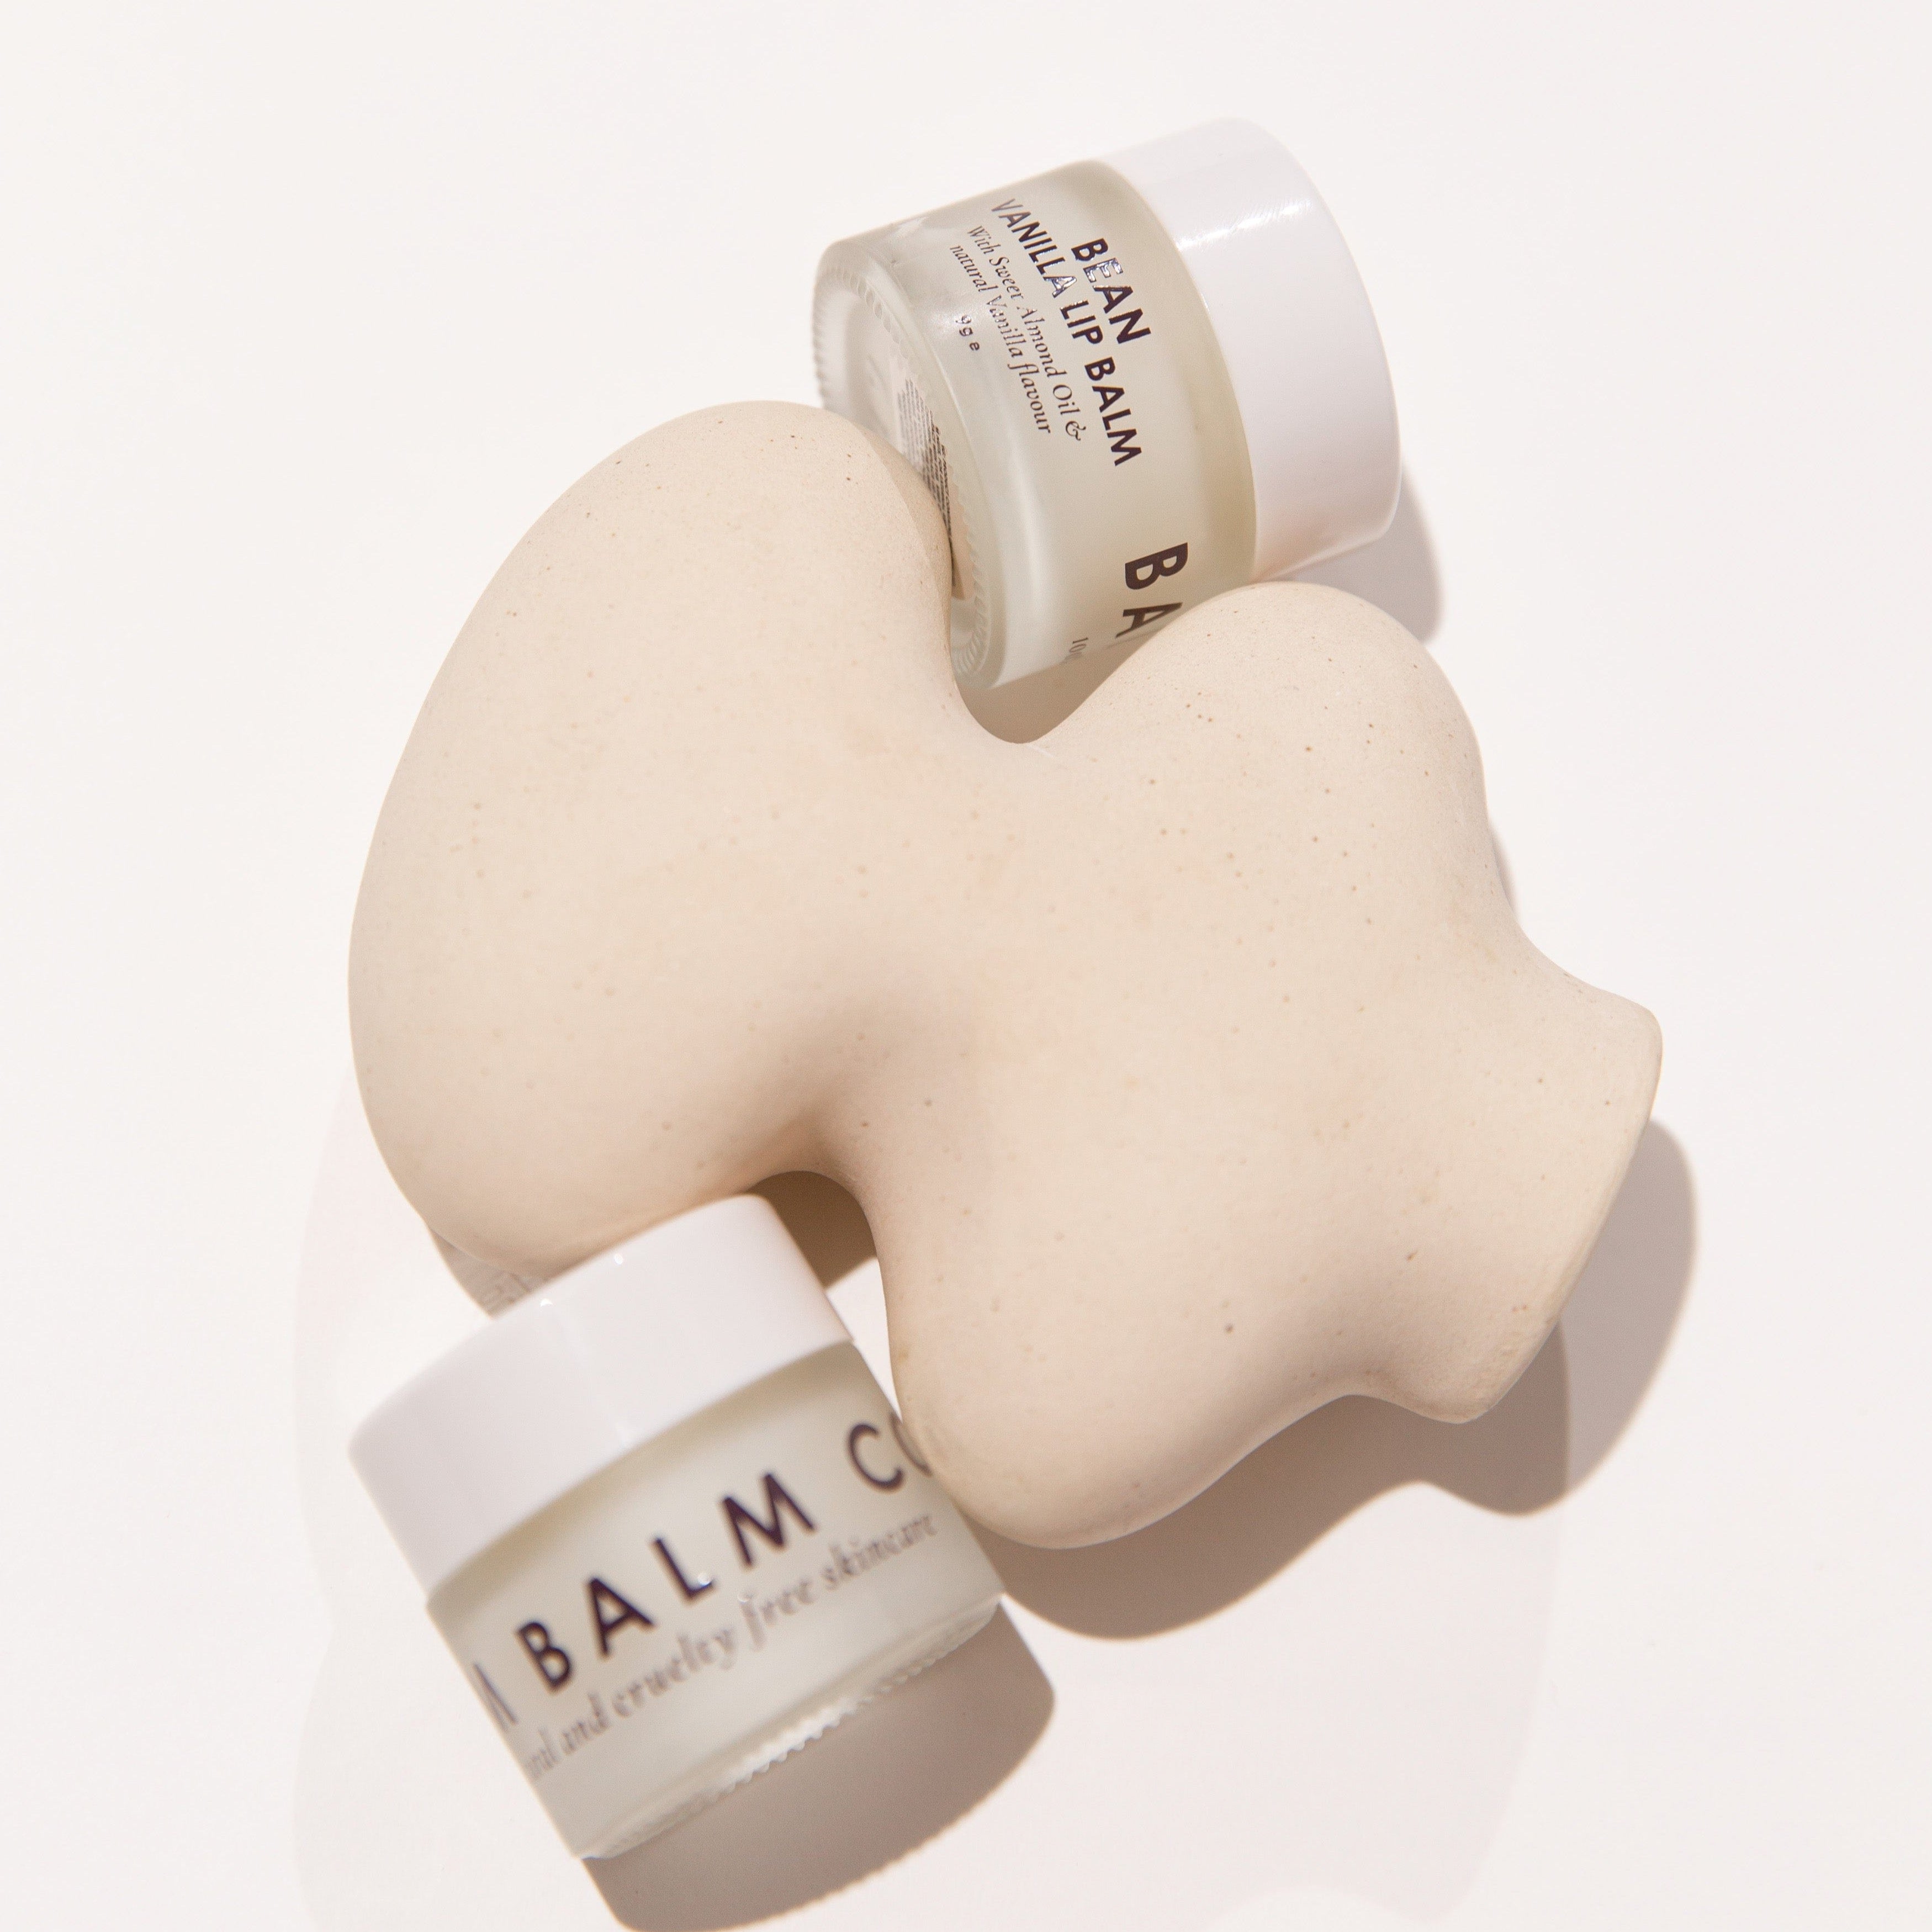 Balm Balm Fresh Lip Treatments - Firm + Soft + Vanilla by Balm Balm Co